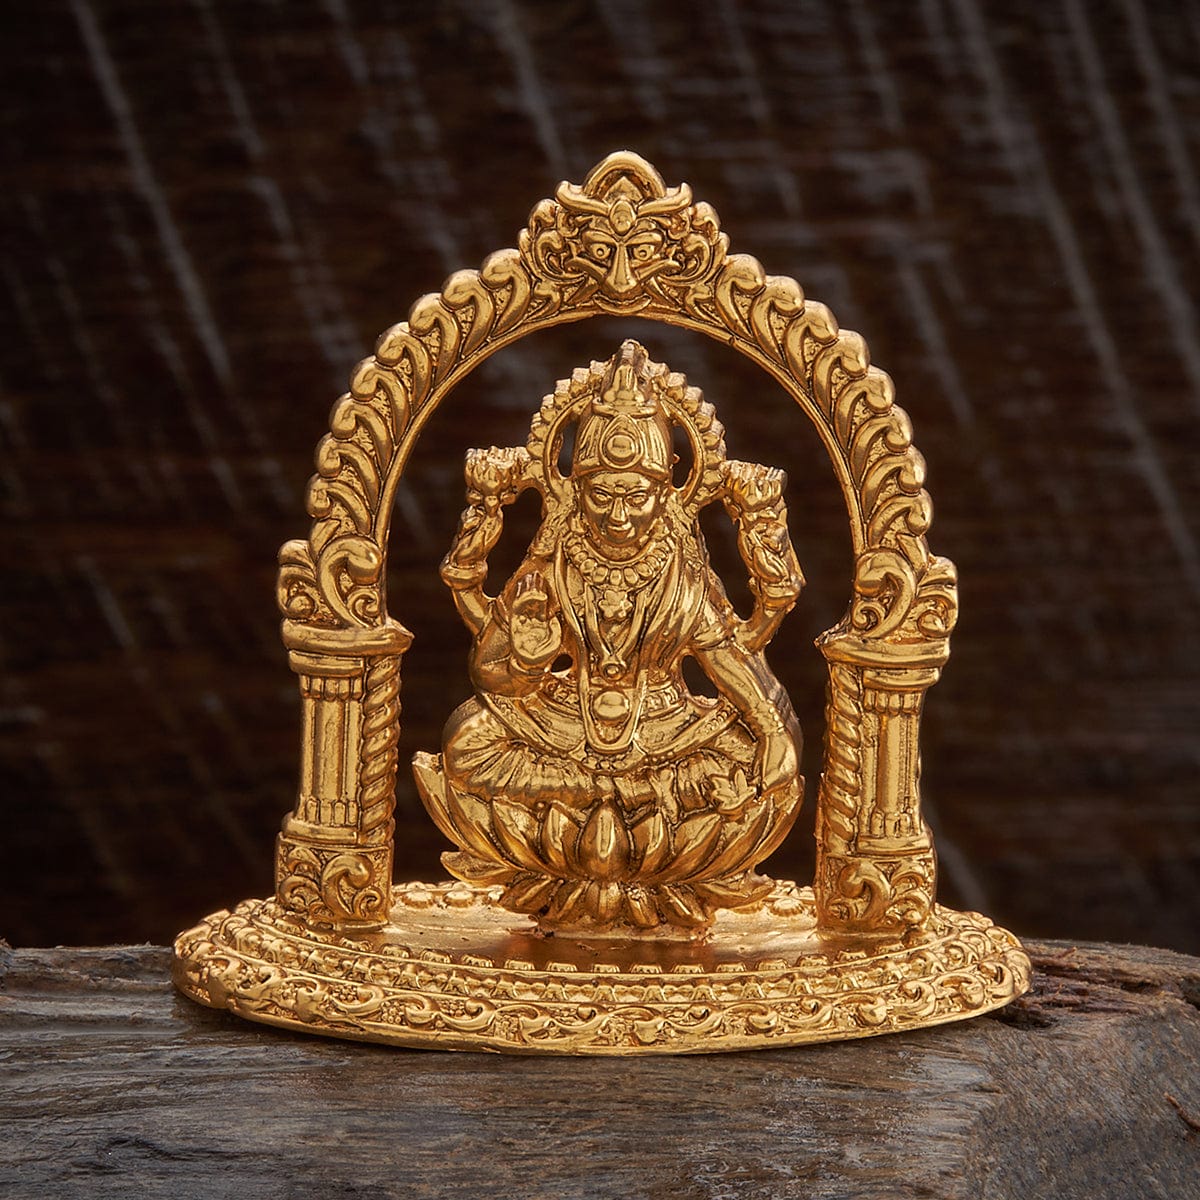 Silver Laxmi Idol | Buy Gift Items online at rinayra.com